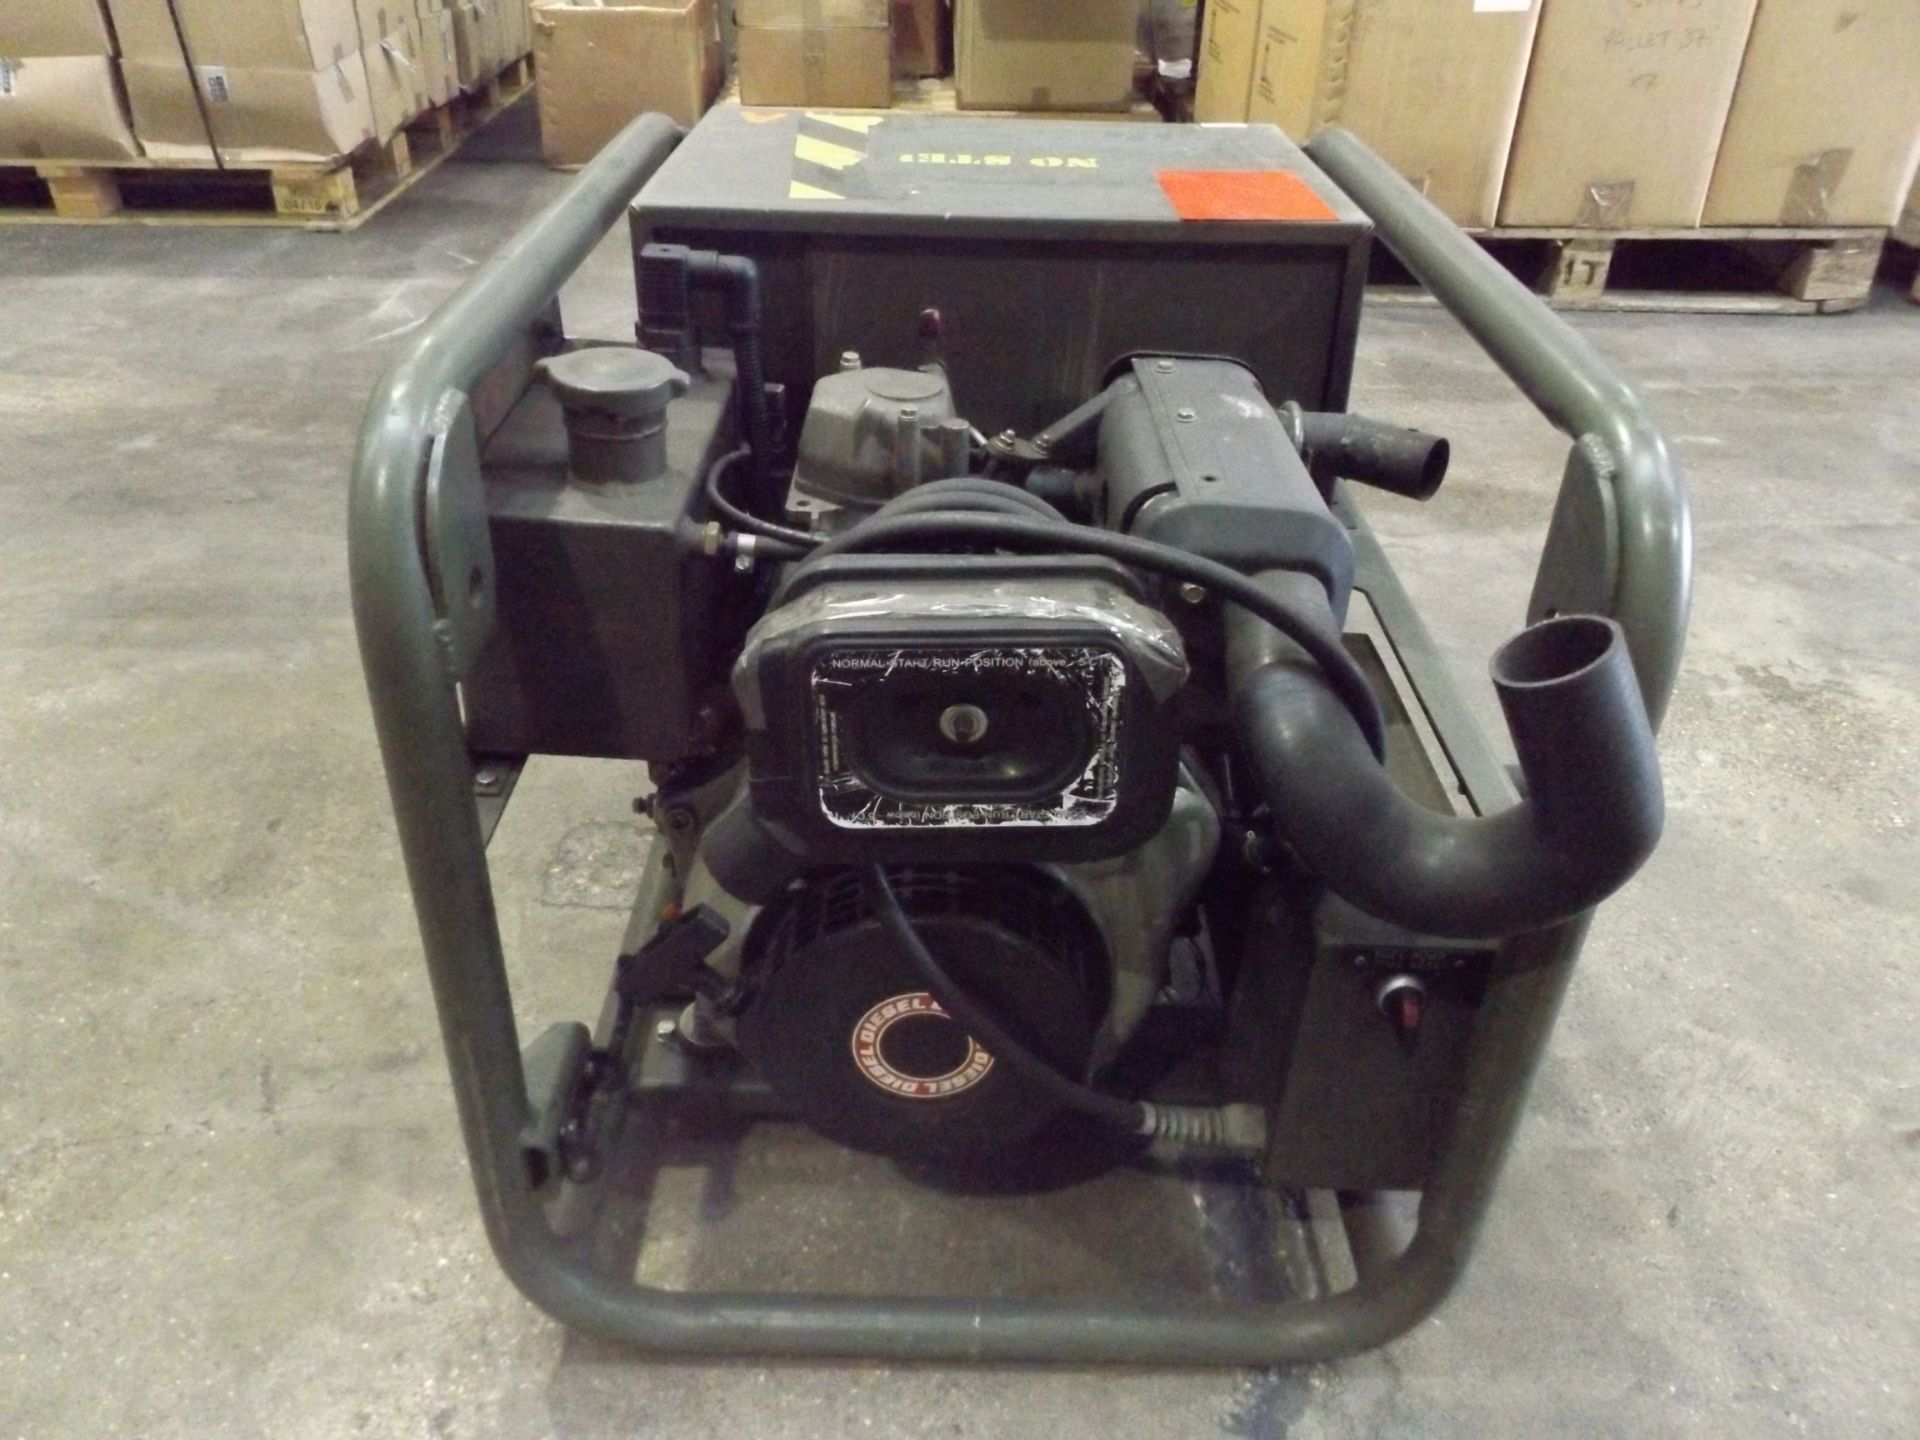 Harrington 4 kVA, 230V Diesel Generator - Bild 5 aus 8